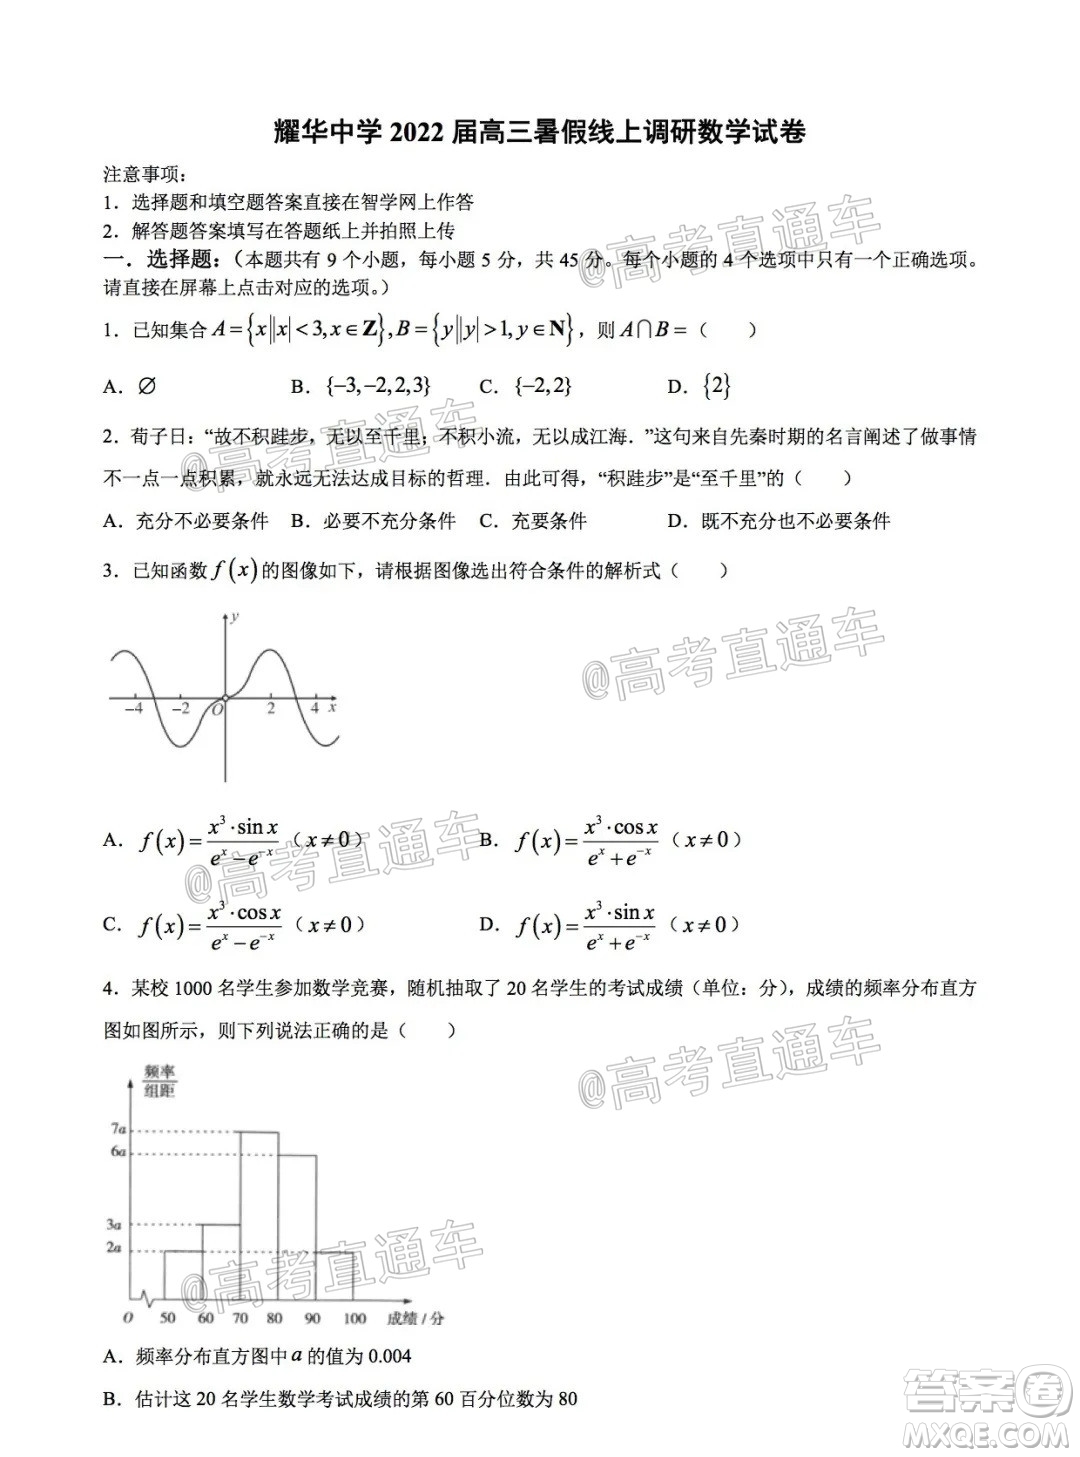 天津耀华中学2022届高三暑假线上调研数学试卷及答案